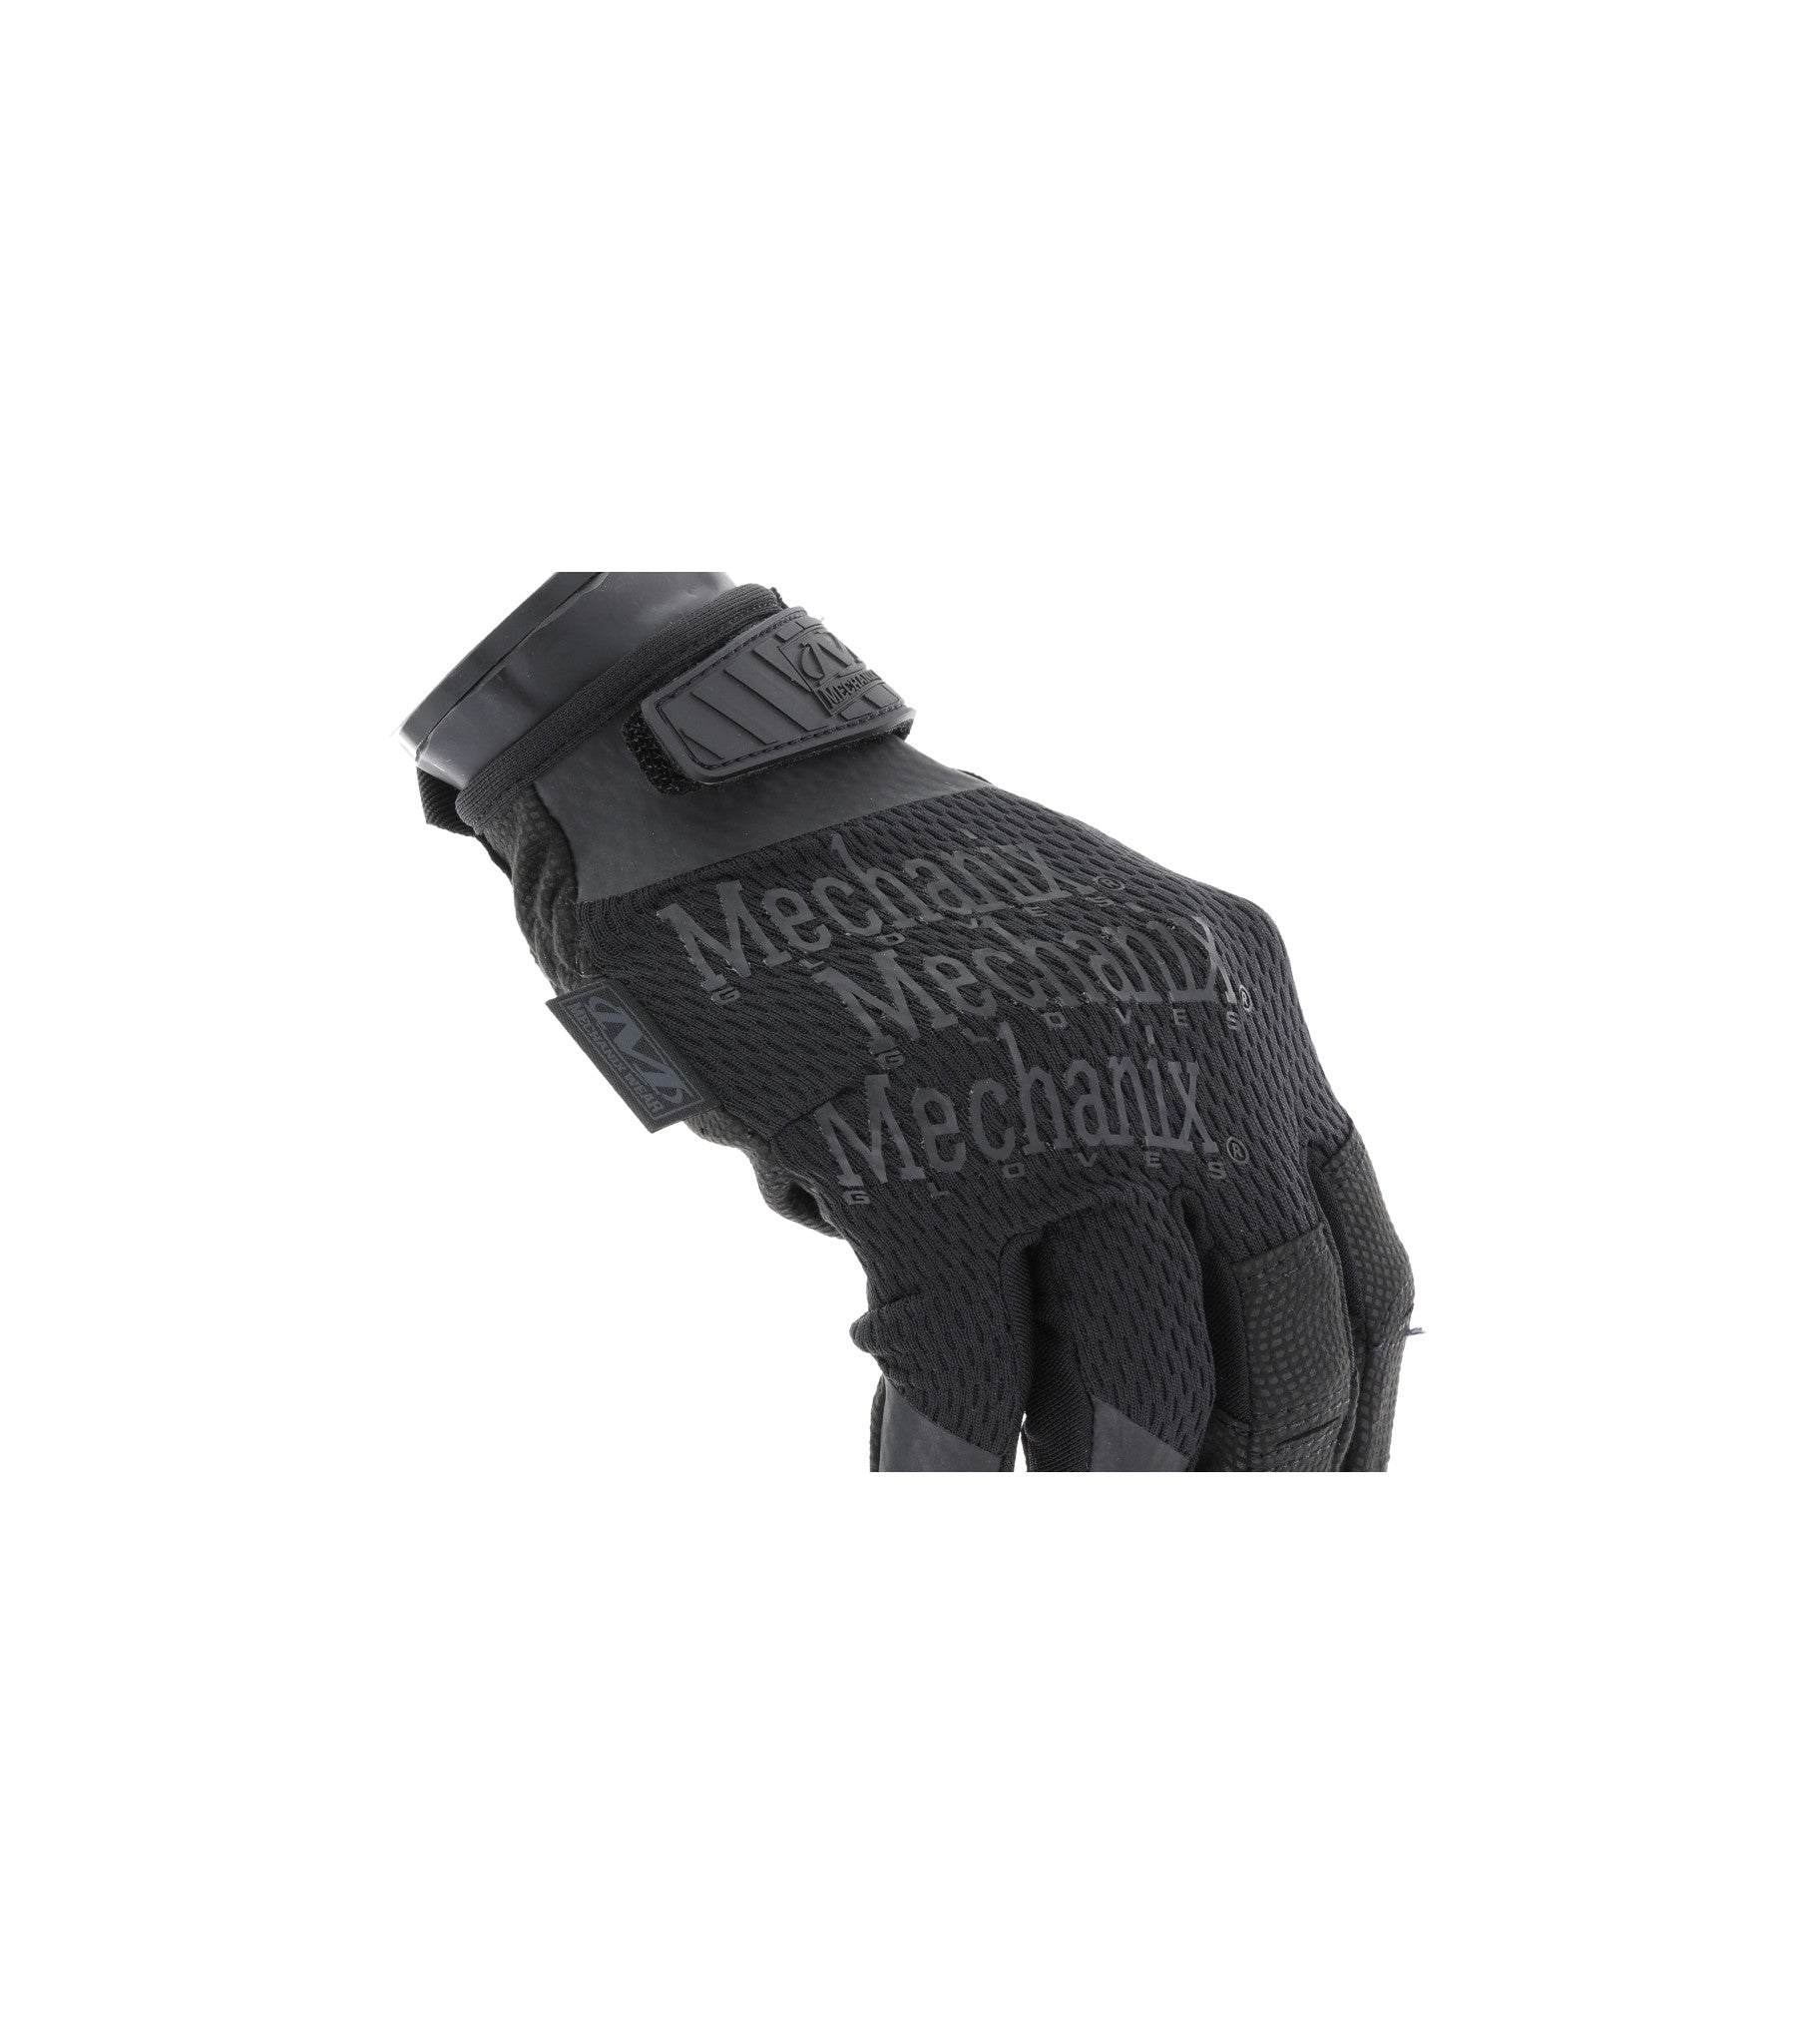 Mechanix Wear Specialty 0.5mm Covert Gloves